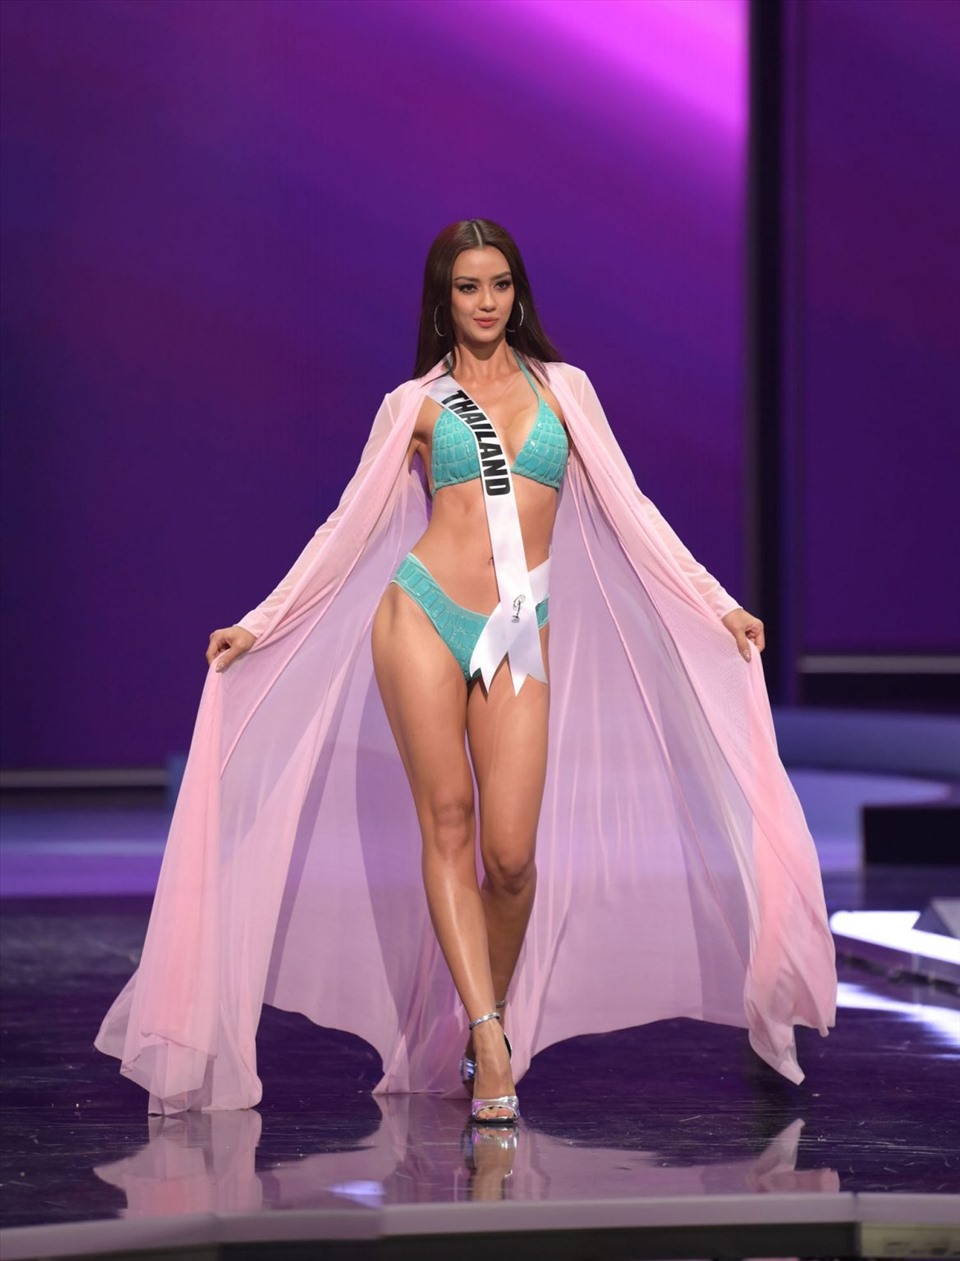 Dàn thí sinh Miss Universe được đánh giá cao về nhan sắc lẫn hình thể. Ảnh: Miss Universe.